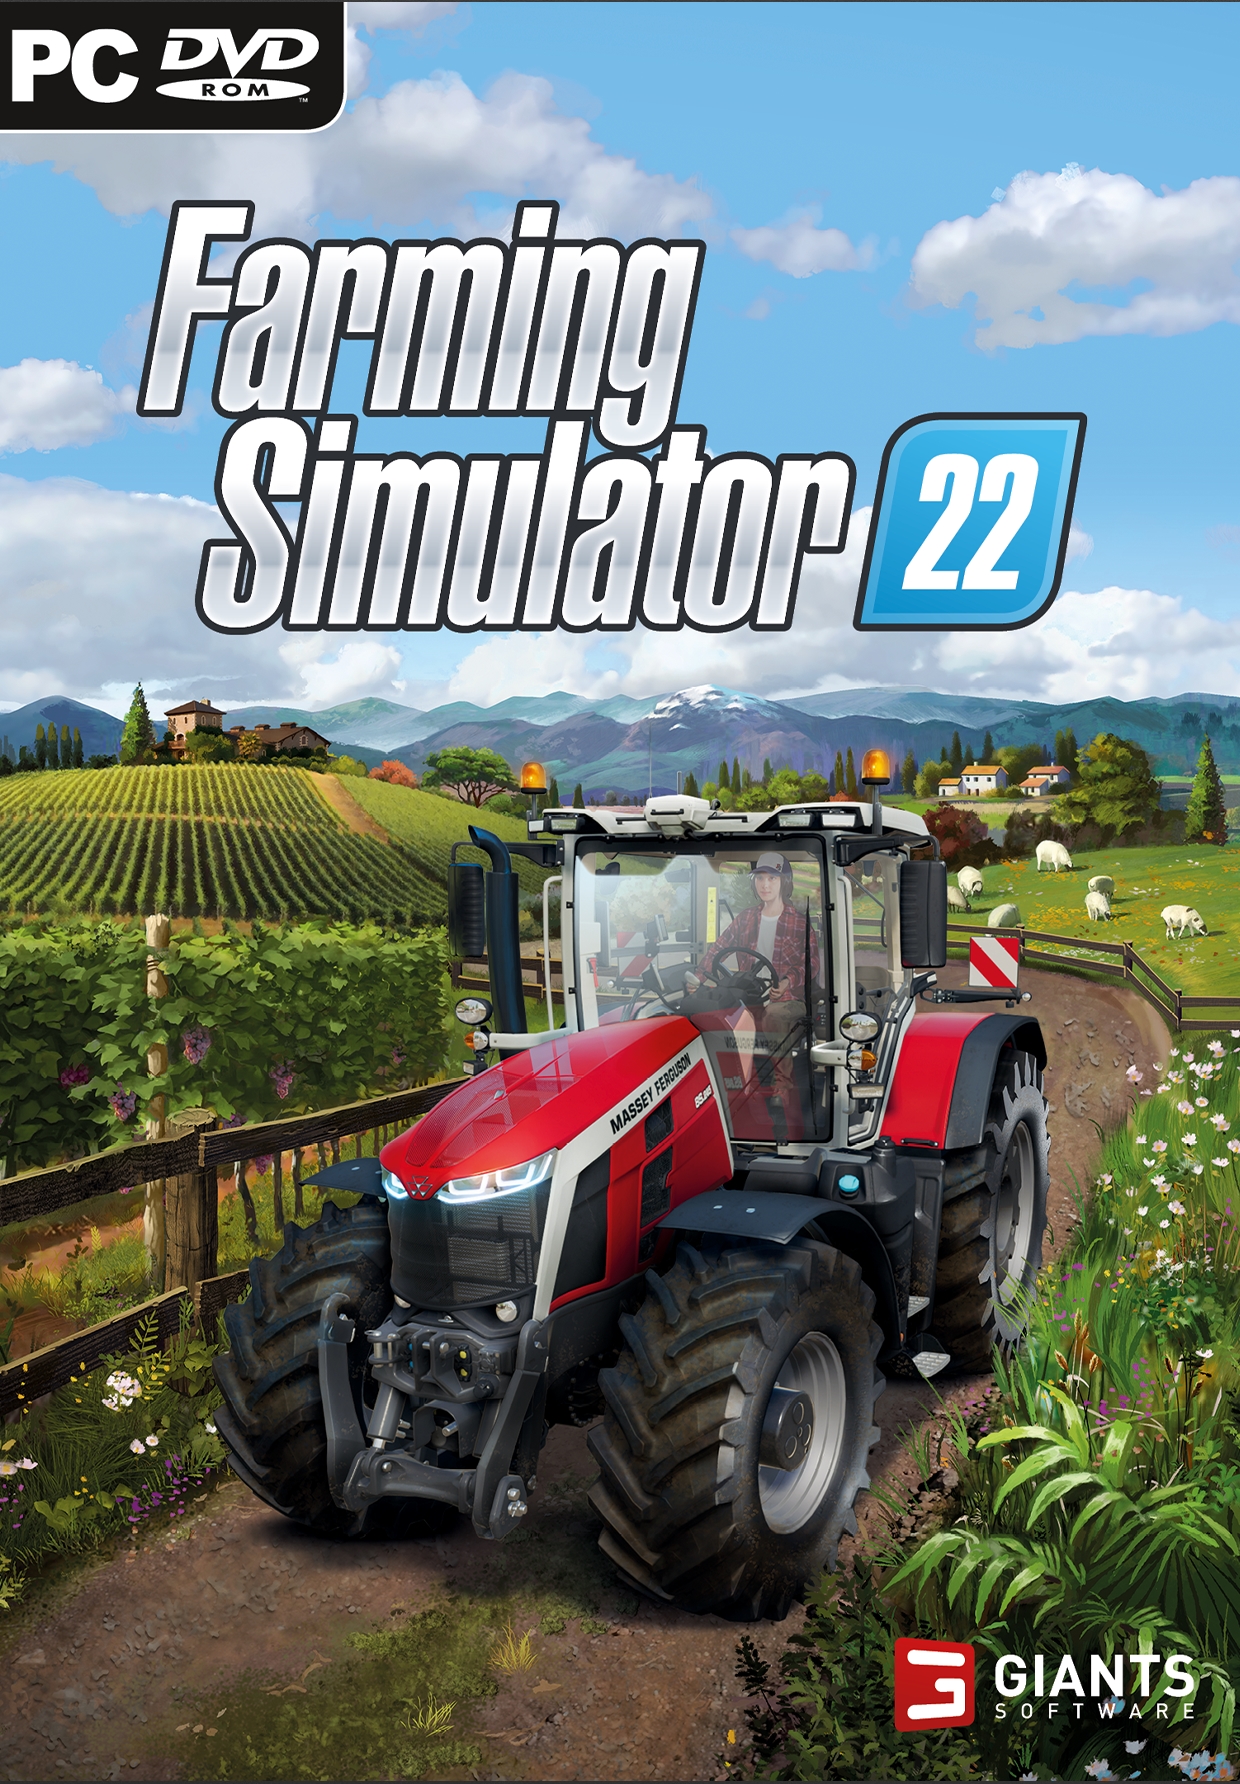 jaquette reduite de Farming Simulator 22 sur PC